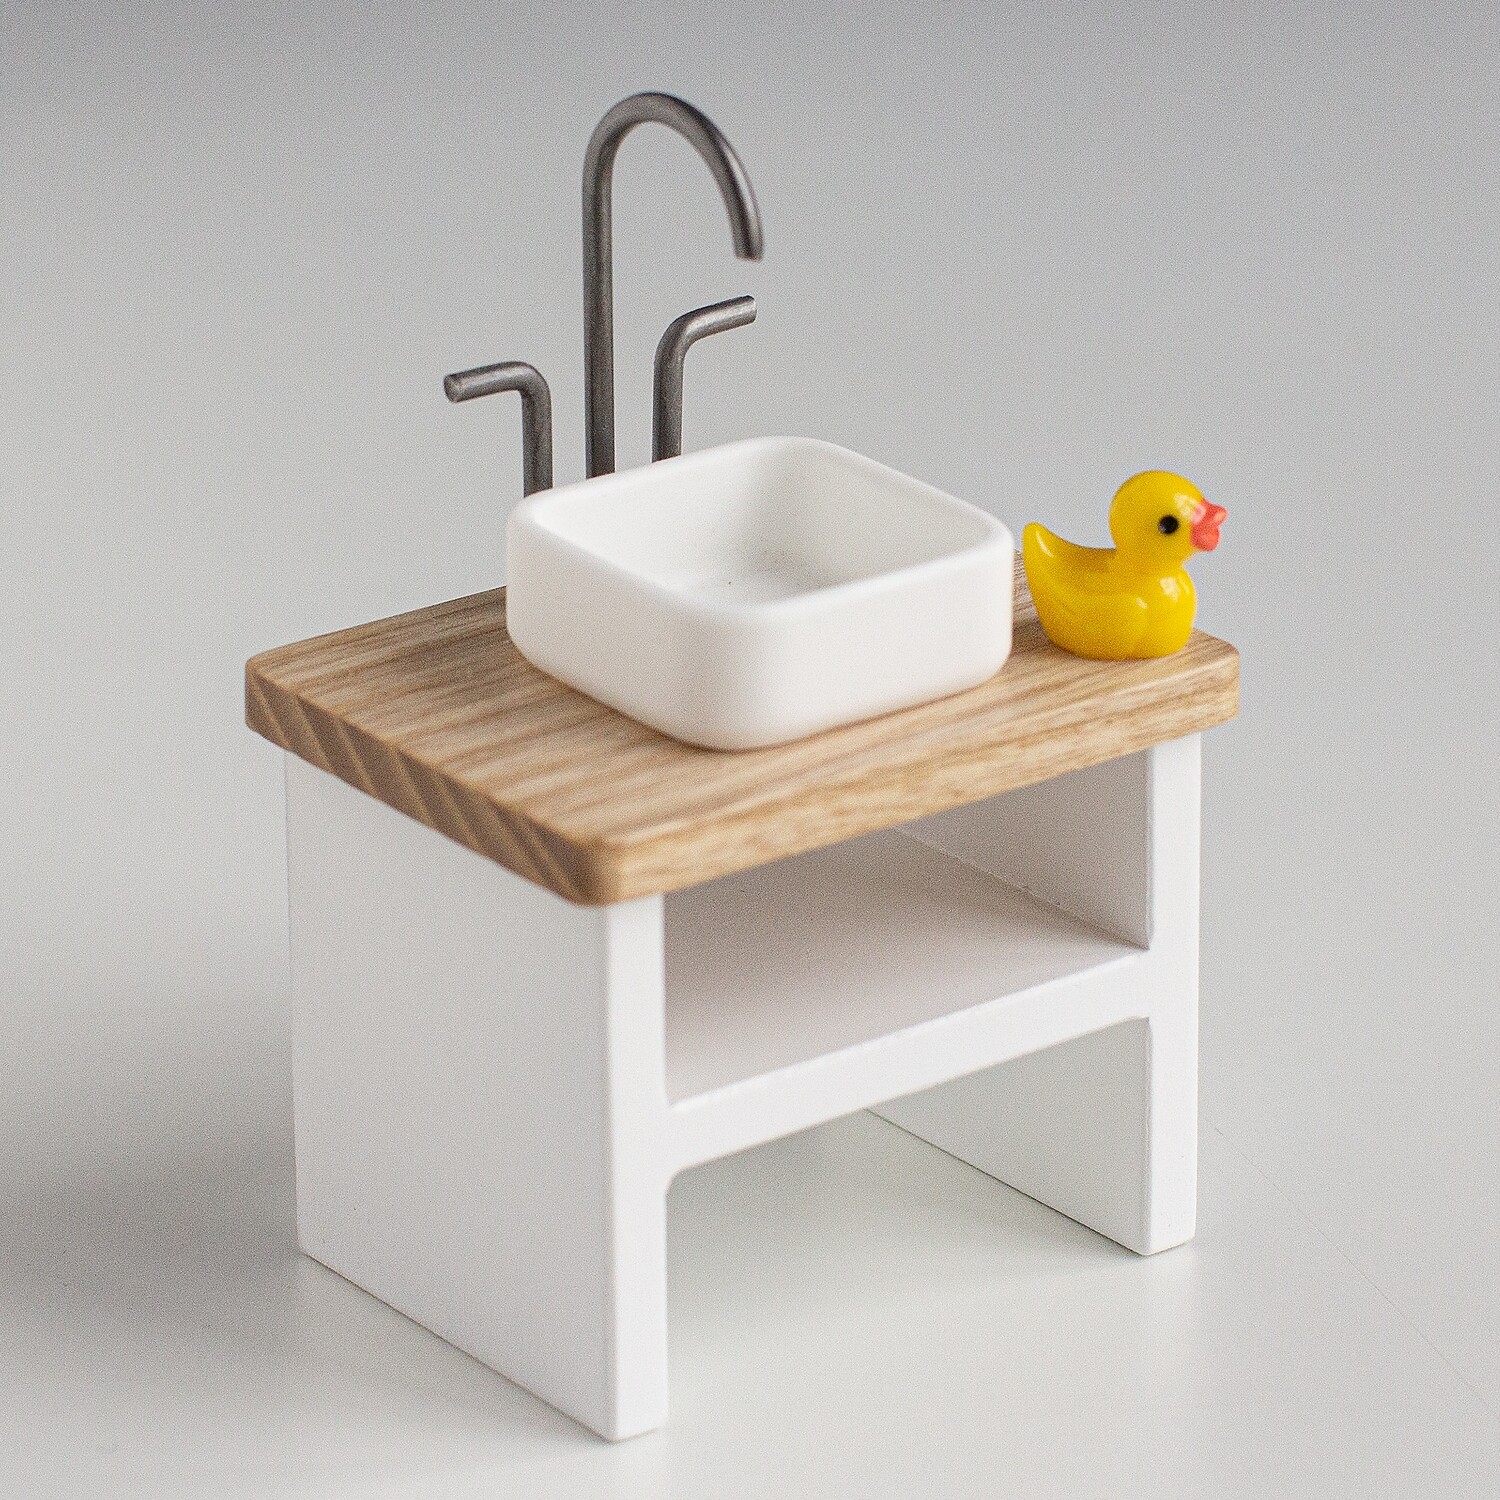 Bathroom table with duck for dollhouse 1:12